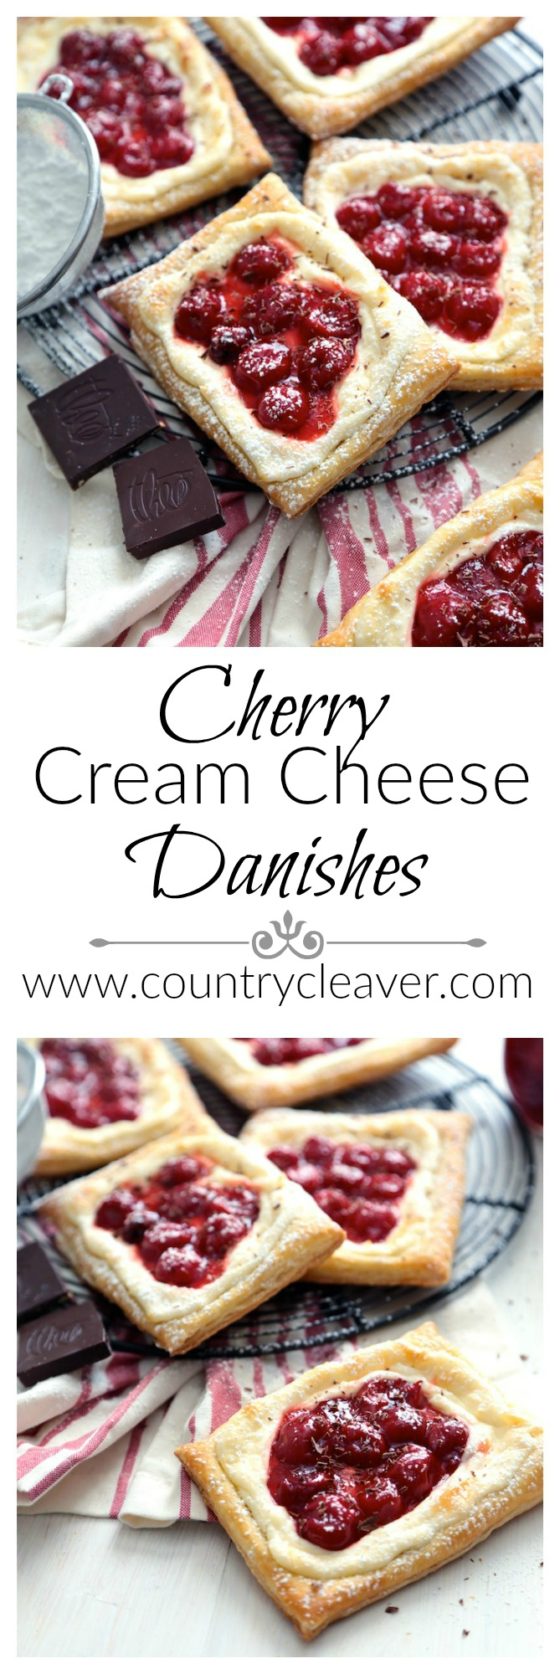 Cherry Cream Cheese Danishes - www.countrycleaver.com